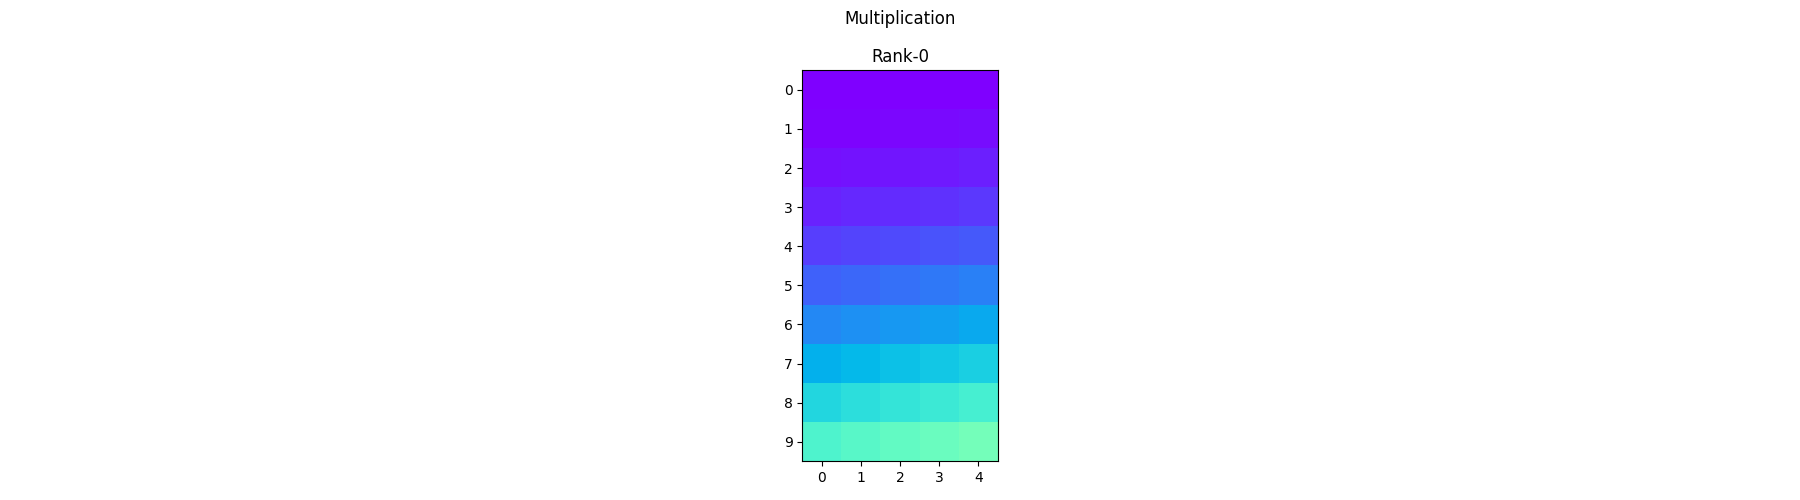 Multiplication, Rank-0